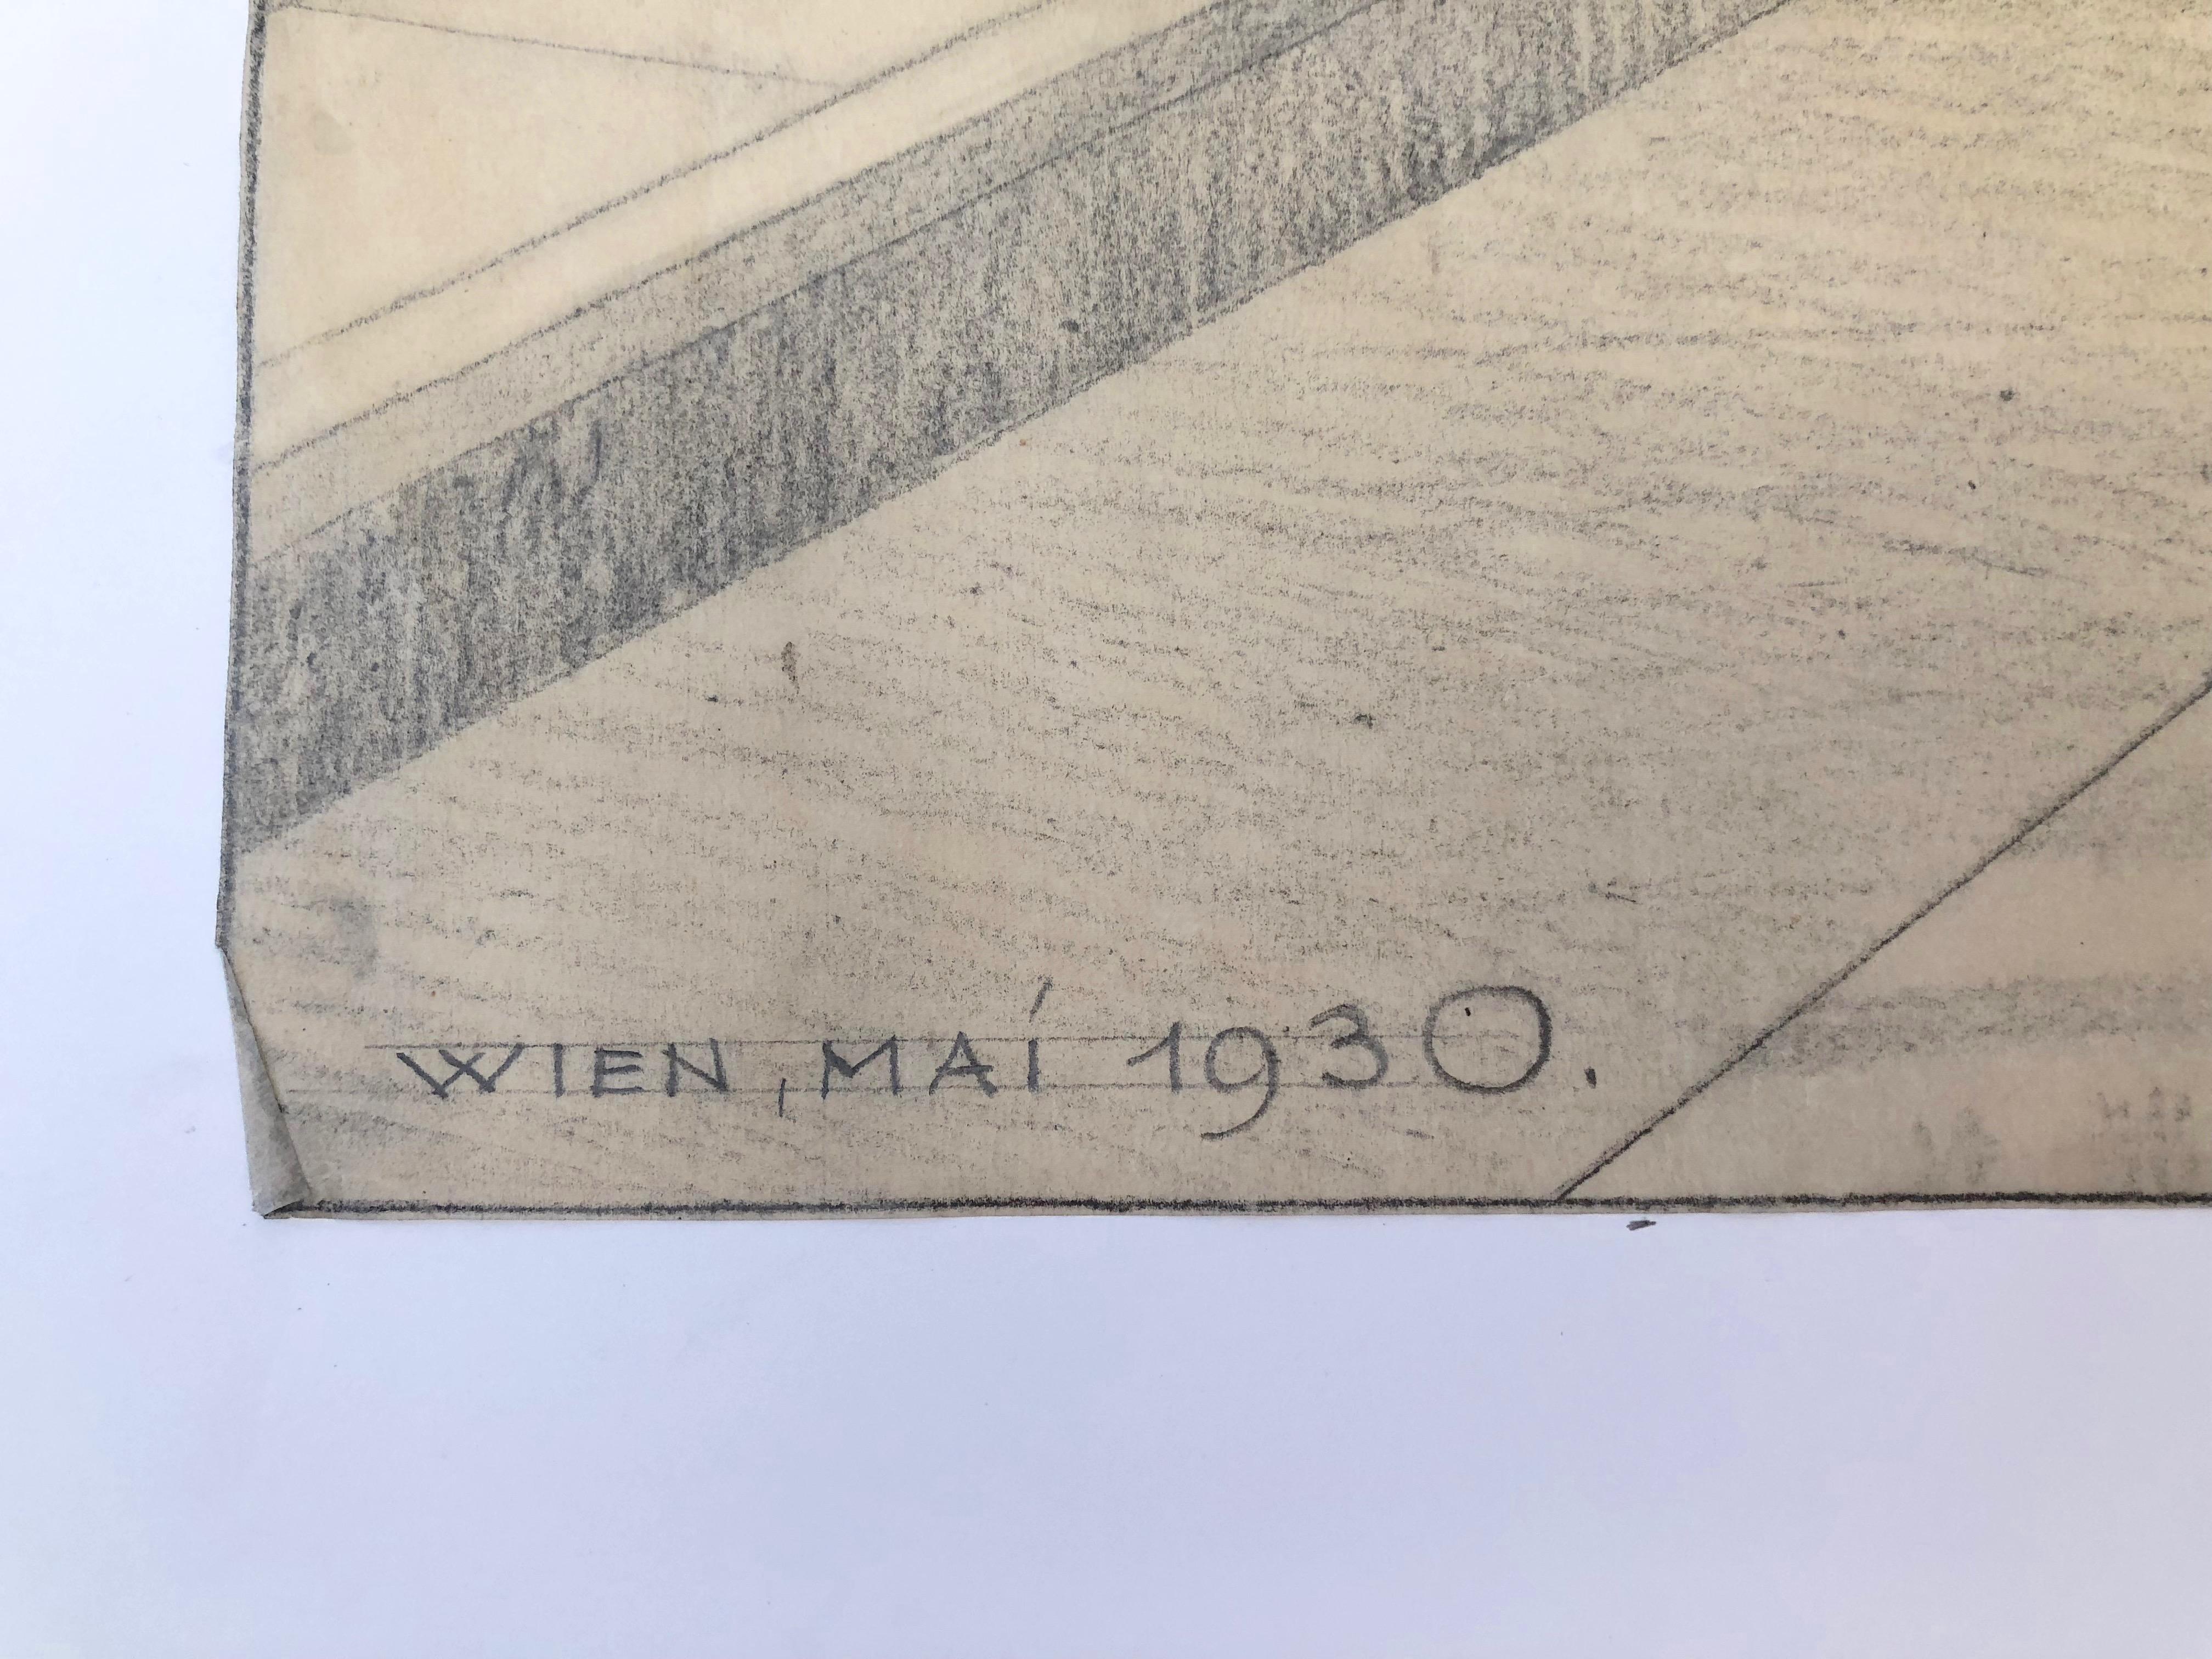 Il s'agit d'une rare série de 5 dessins concernant la loge des francs-maçons de la Schwind Gasse numéro 8, dans le 4e arrondissement de Vienne. 
Les dessins ont été réalisés en 1930 au mois de mai par l'architecte Robert Gerlach. Le pavillon a